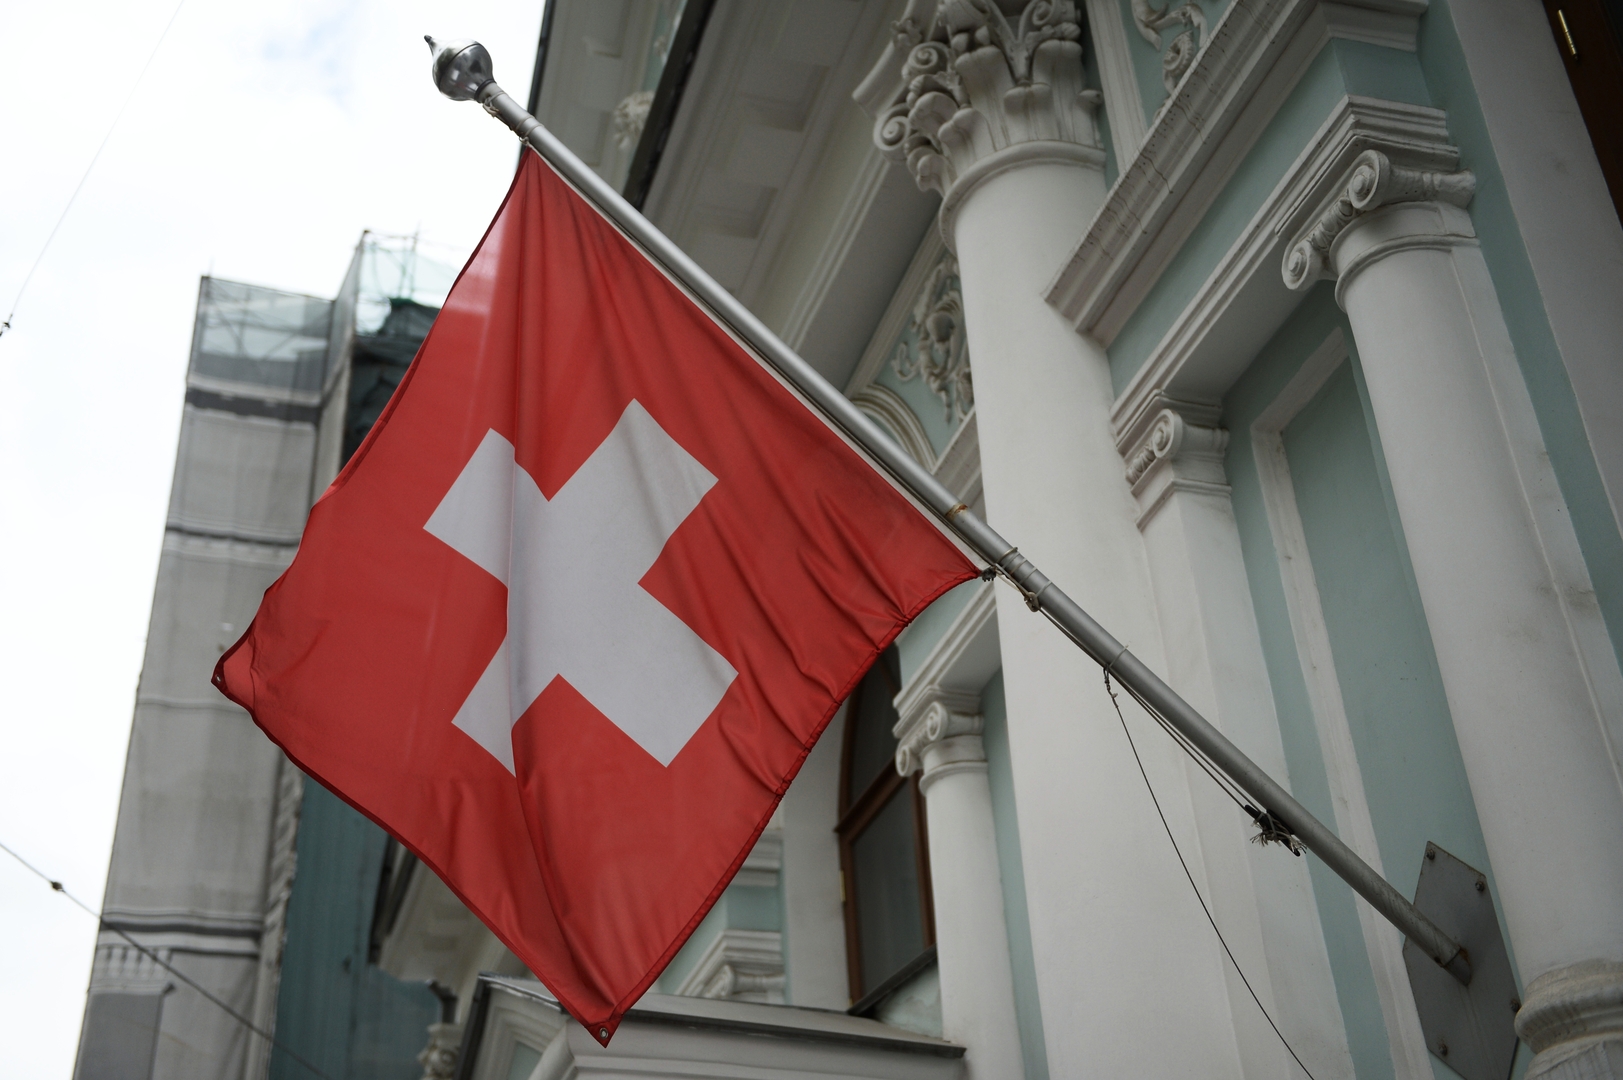 السفير الروسي لدى سويسرا: تحيز السلطات السويسرية واضح تجاه الناتو